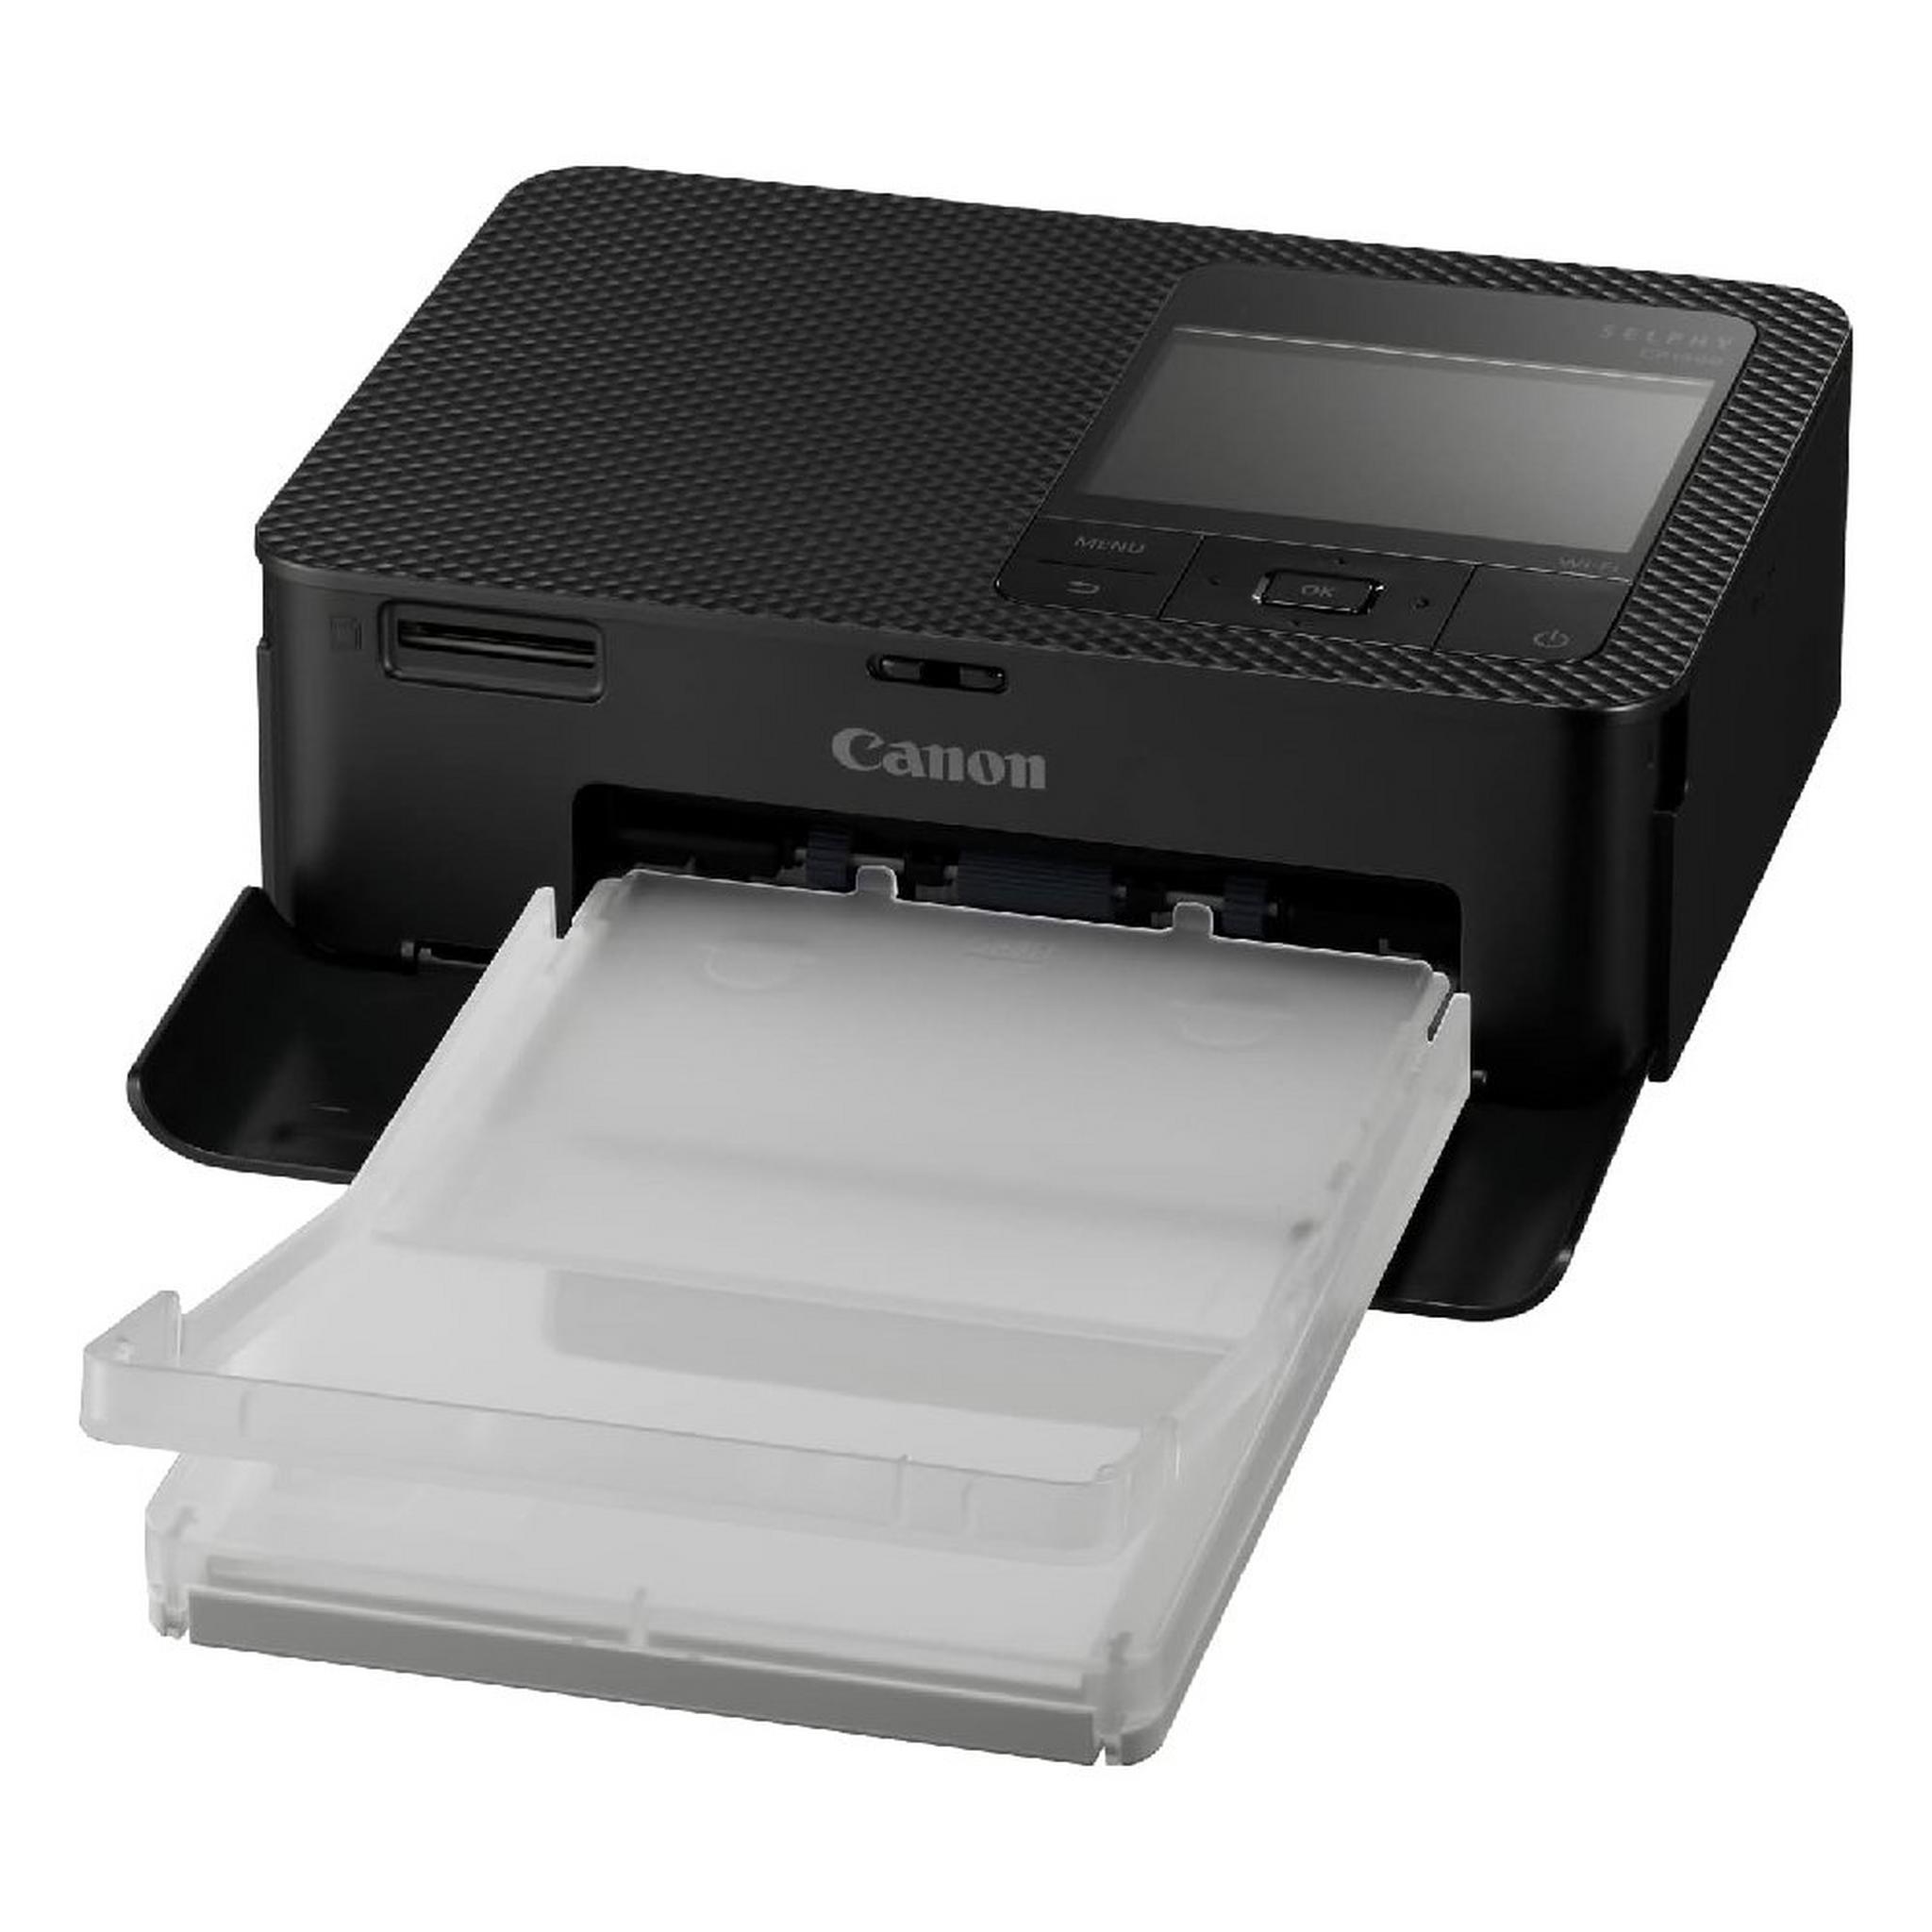 Canon SELPHY CP1500 Compact Photo Printer - Black